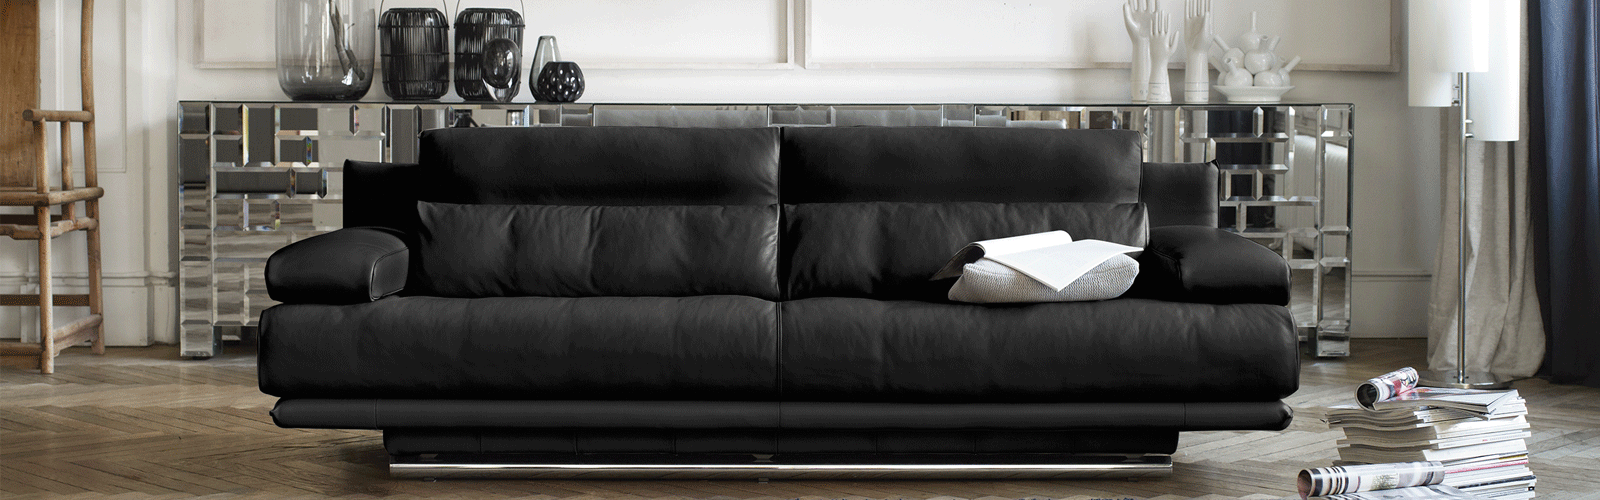 Accumulatie excuus schokkend Rolf Benz design couch 6500 at het Rolf Benz Experience Center Mijdrecht